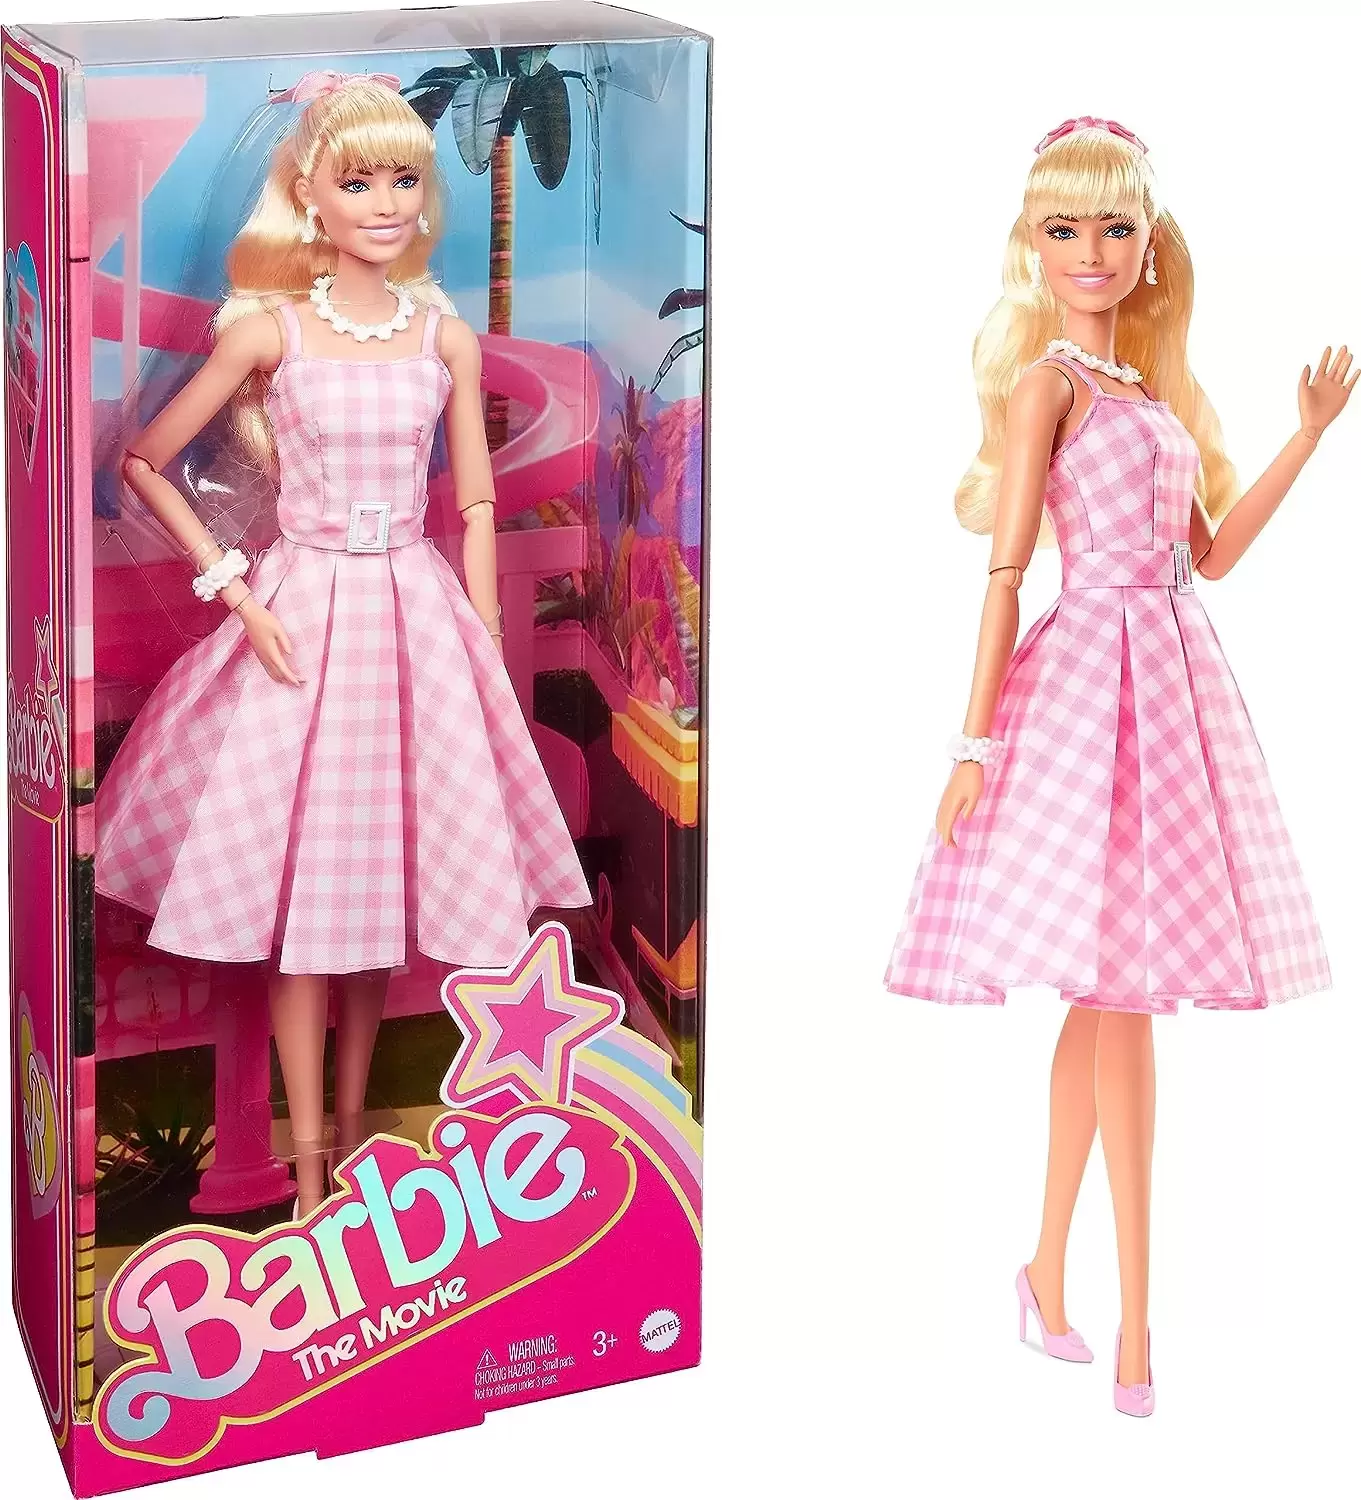 Barbie - The Movie - Barbie (Margot Robbie)